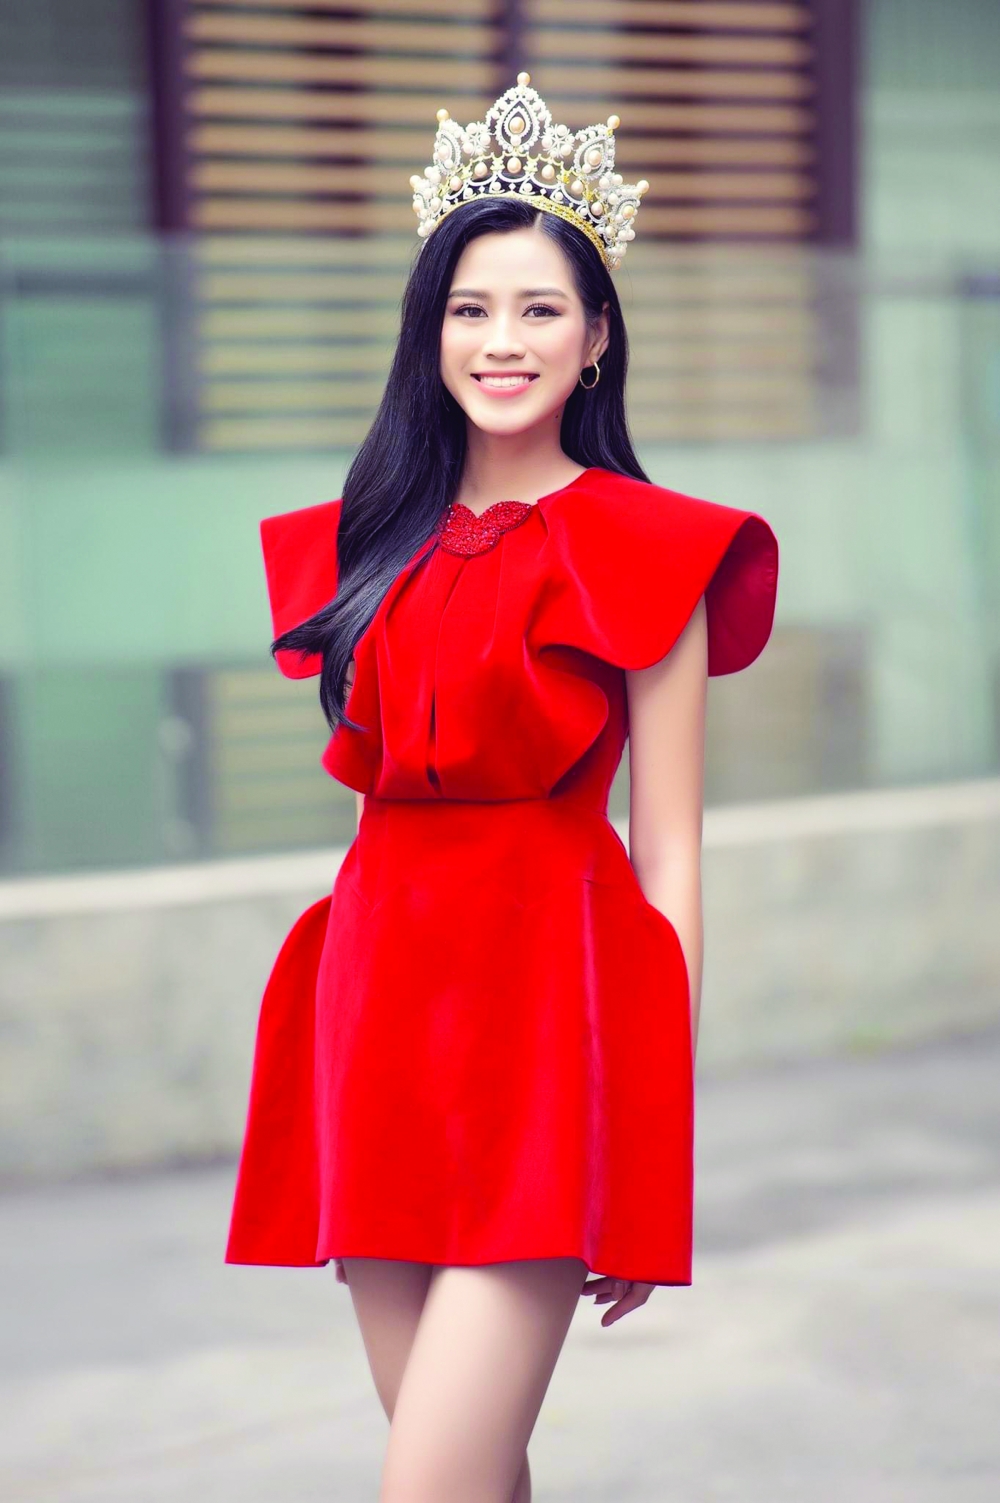 Hoa hậu Việt Nam 2020 Đỗ Thị Hà: Truyền cảm hứng từ hành động nhỏ